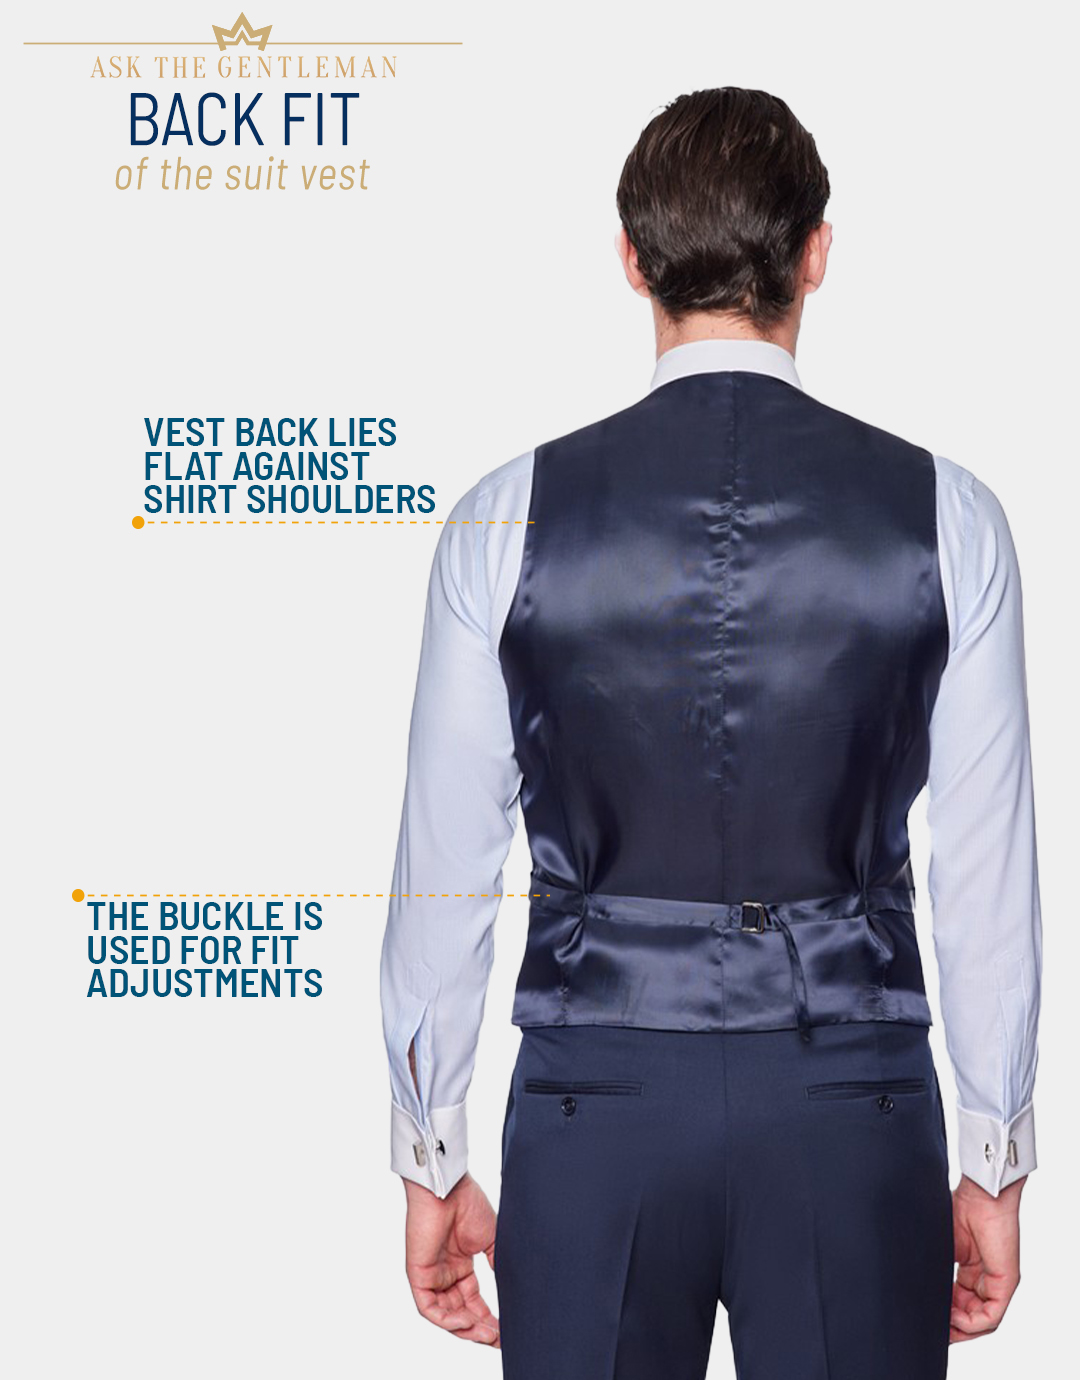 How should the suit vest back fit